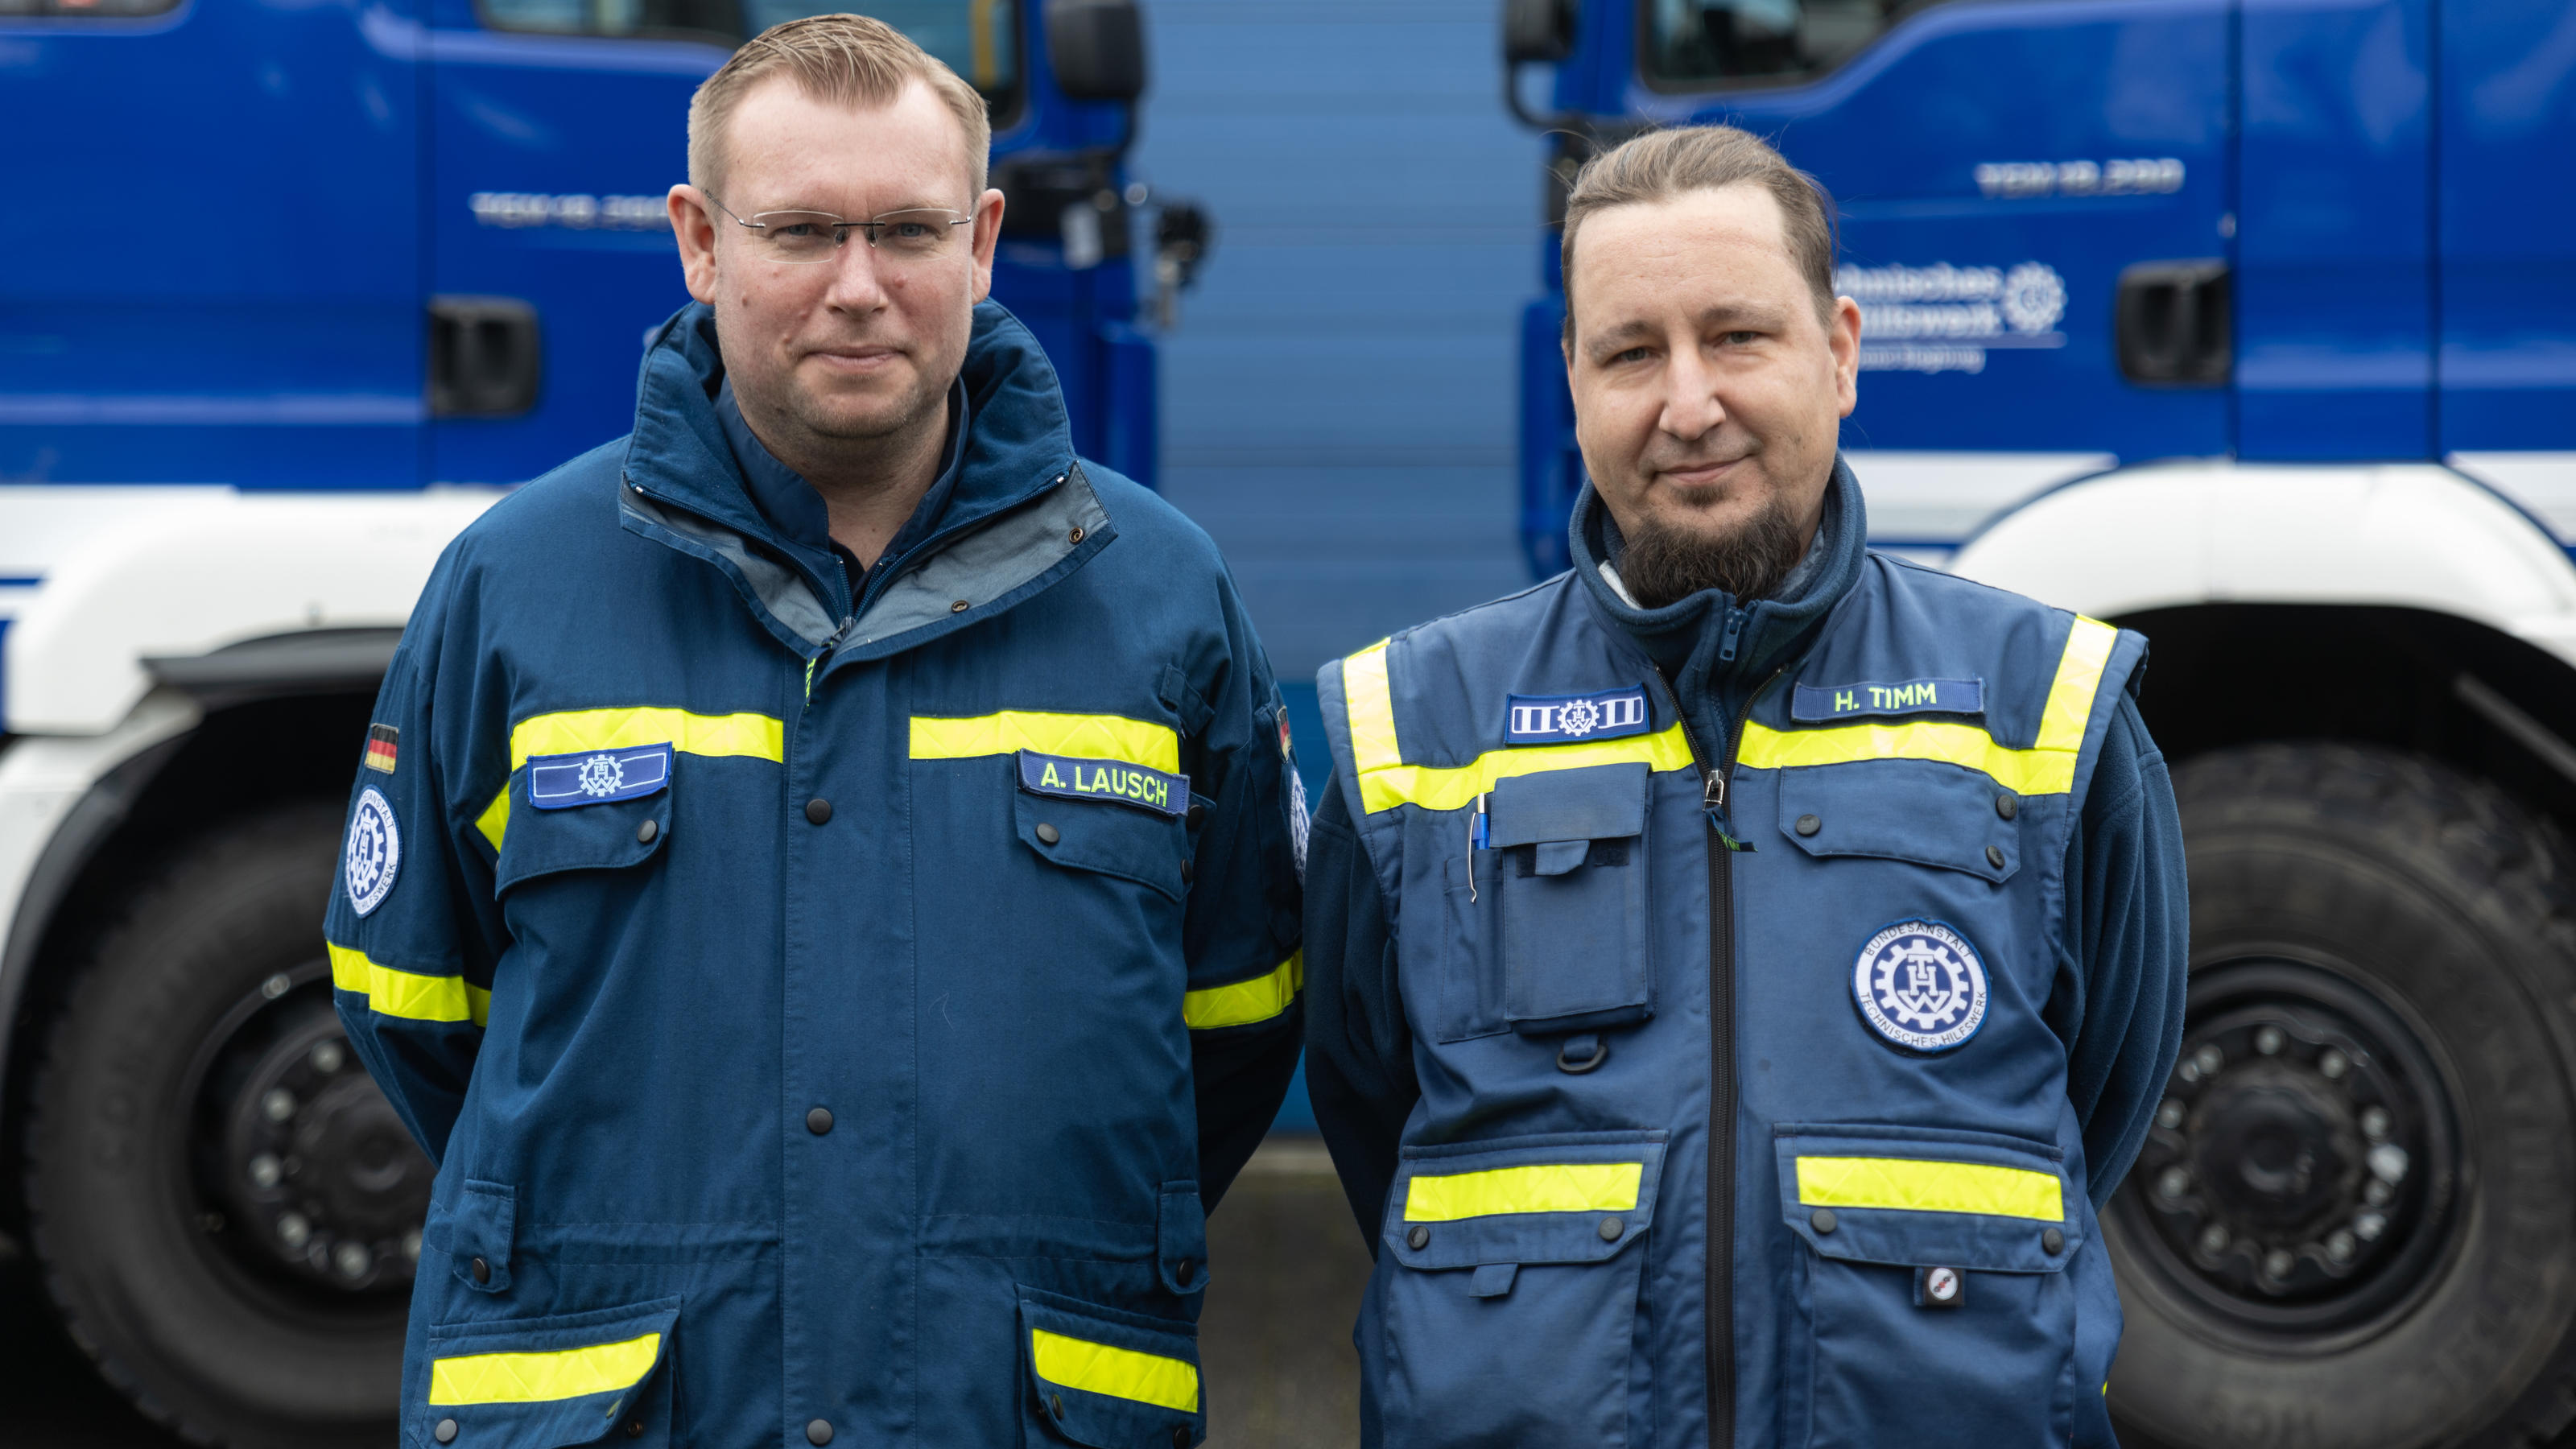 Axel Lausch und Helge Timm aus dem Ortsverband Norderstedt sind mit im Team.